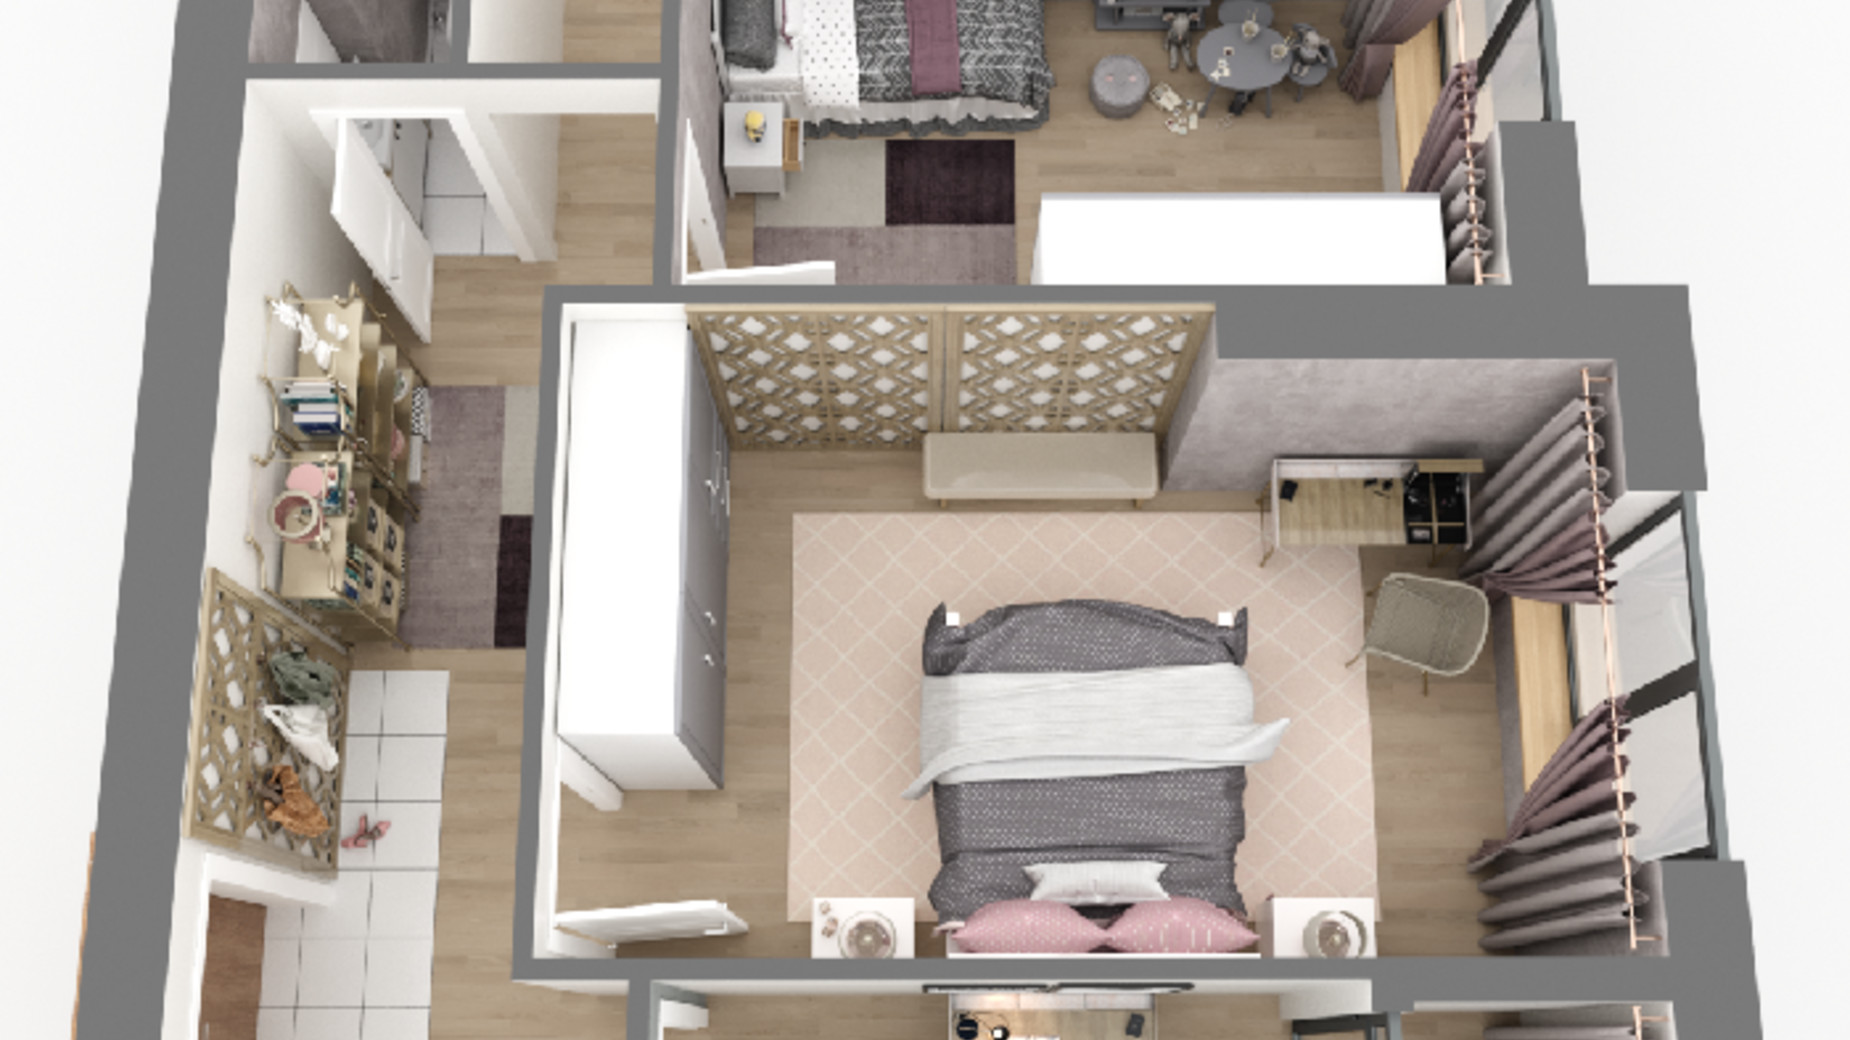 Планування 3-кімнатної квартири в ЖК Дім у моря Premier 82.08 м², фото 586726